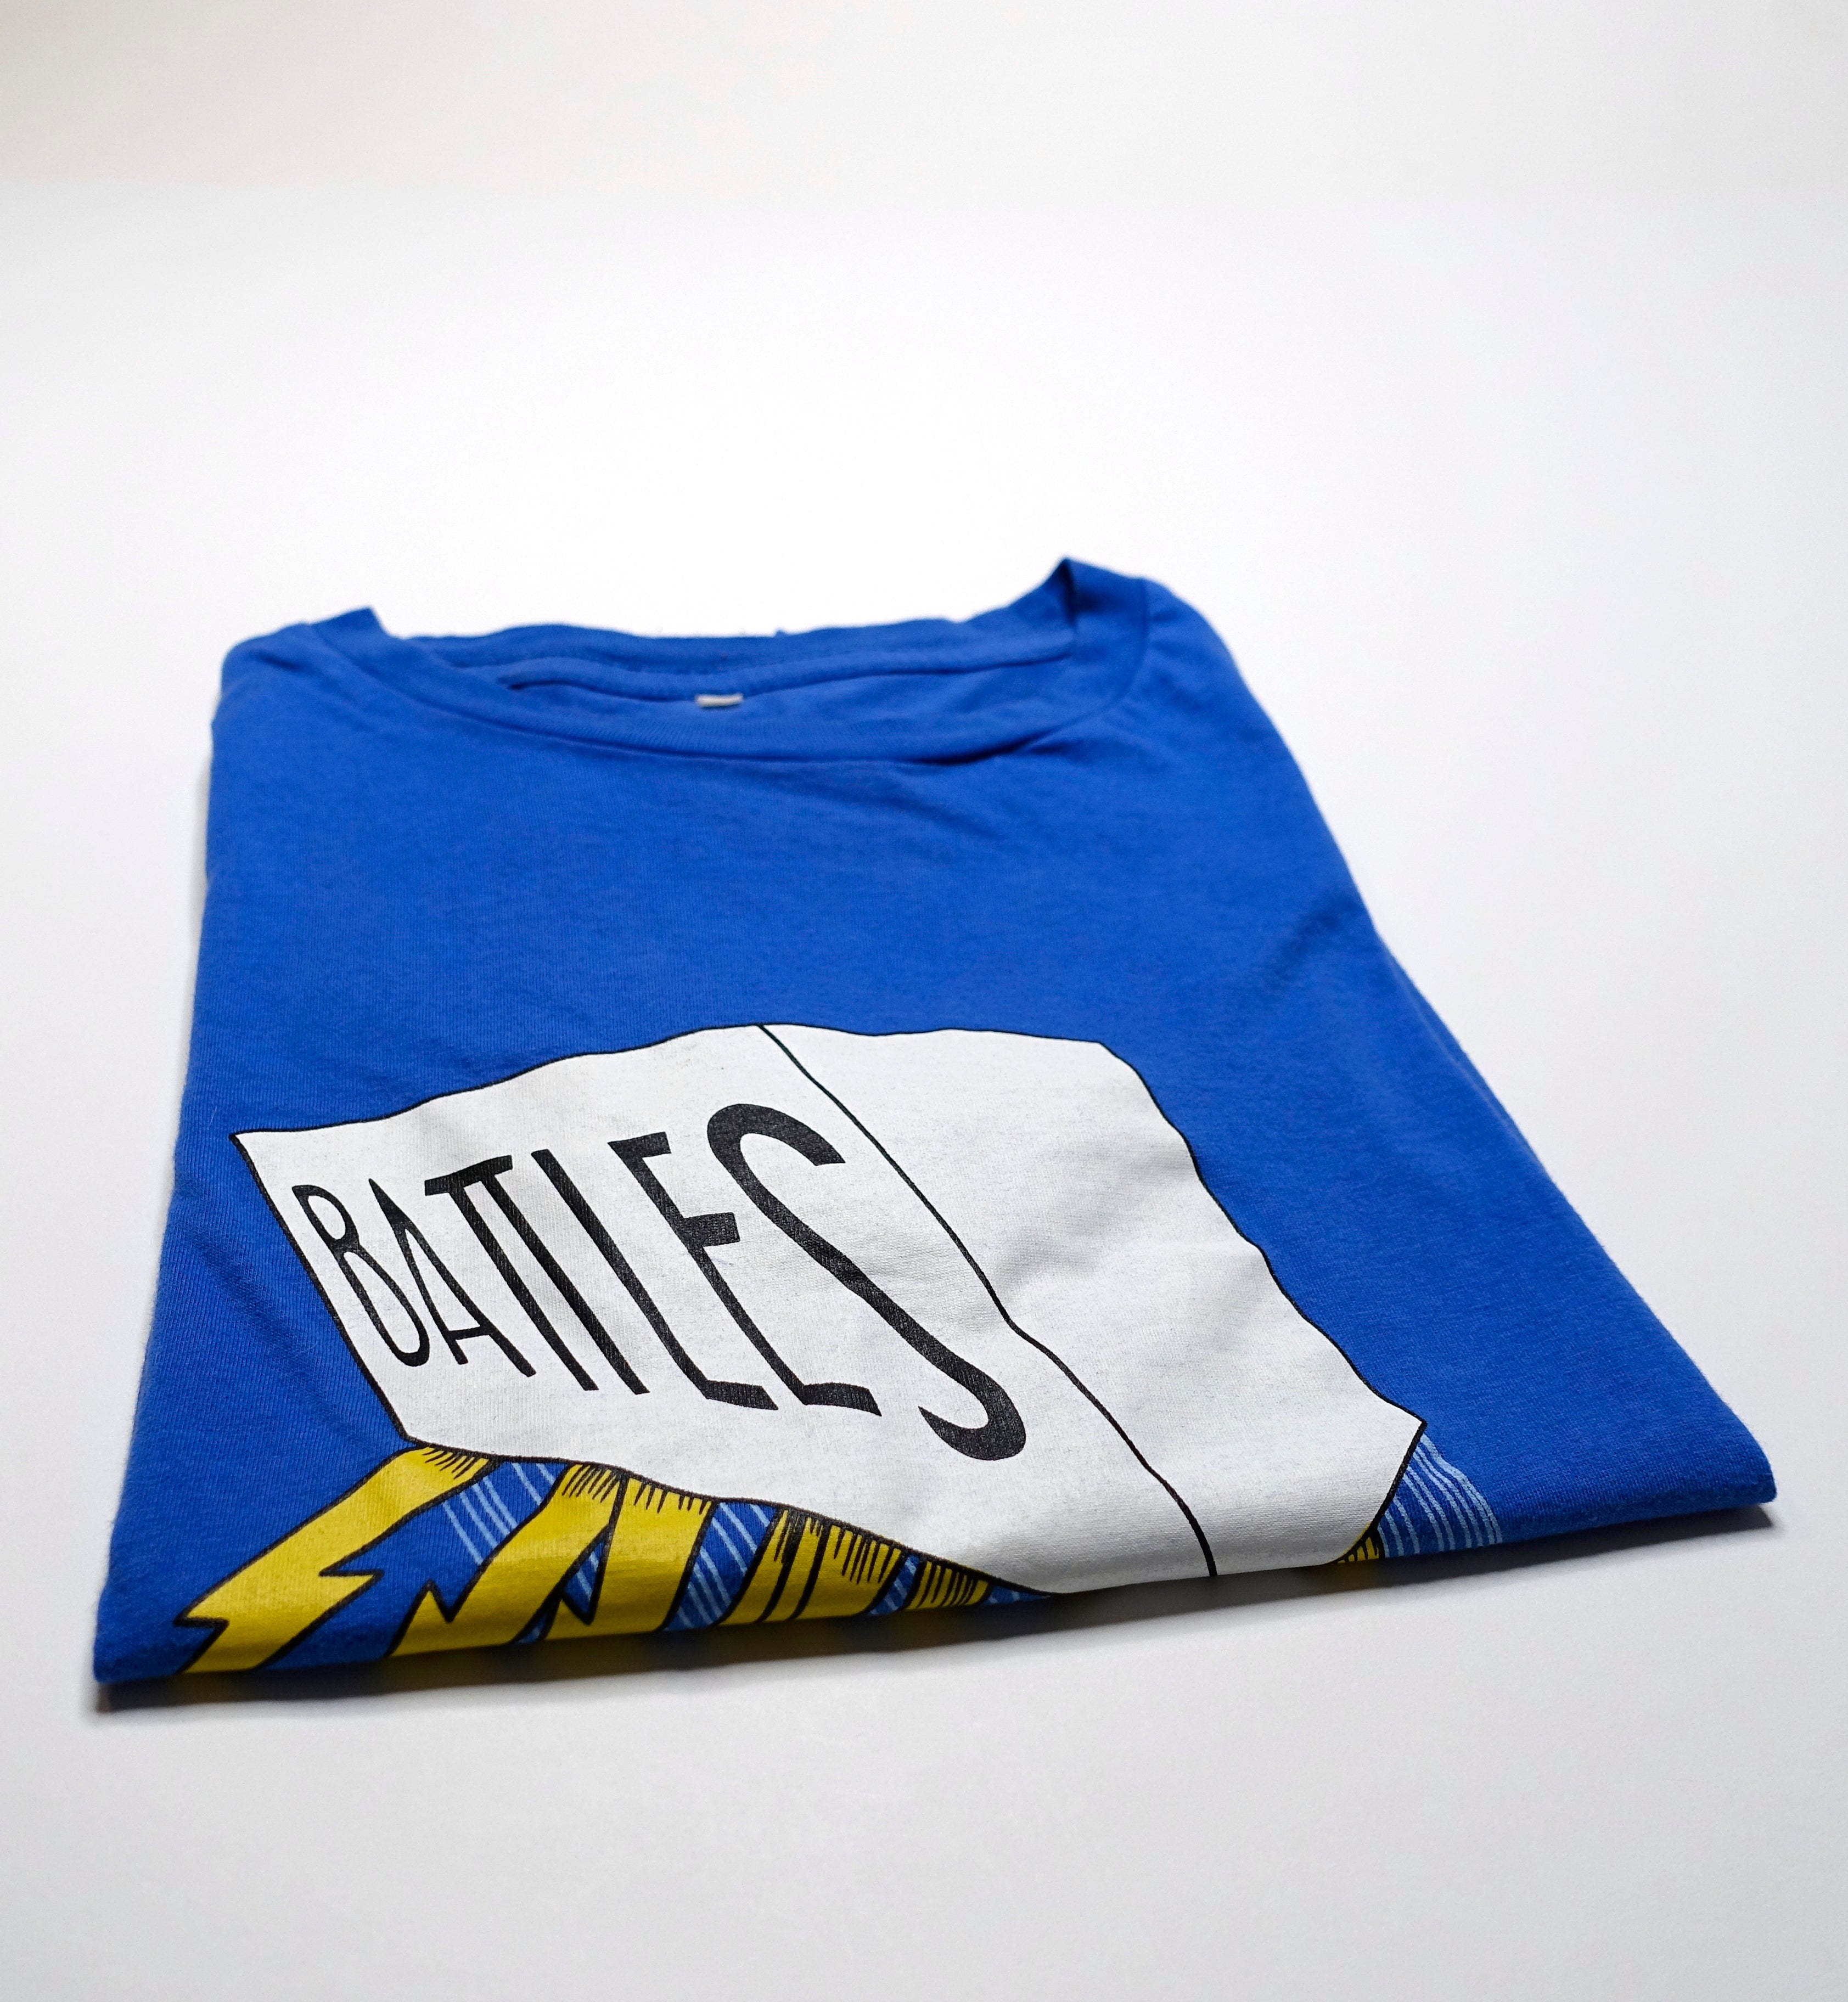 Battles - Electric Brick Tour Shirt Size Medium